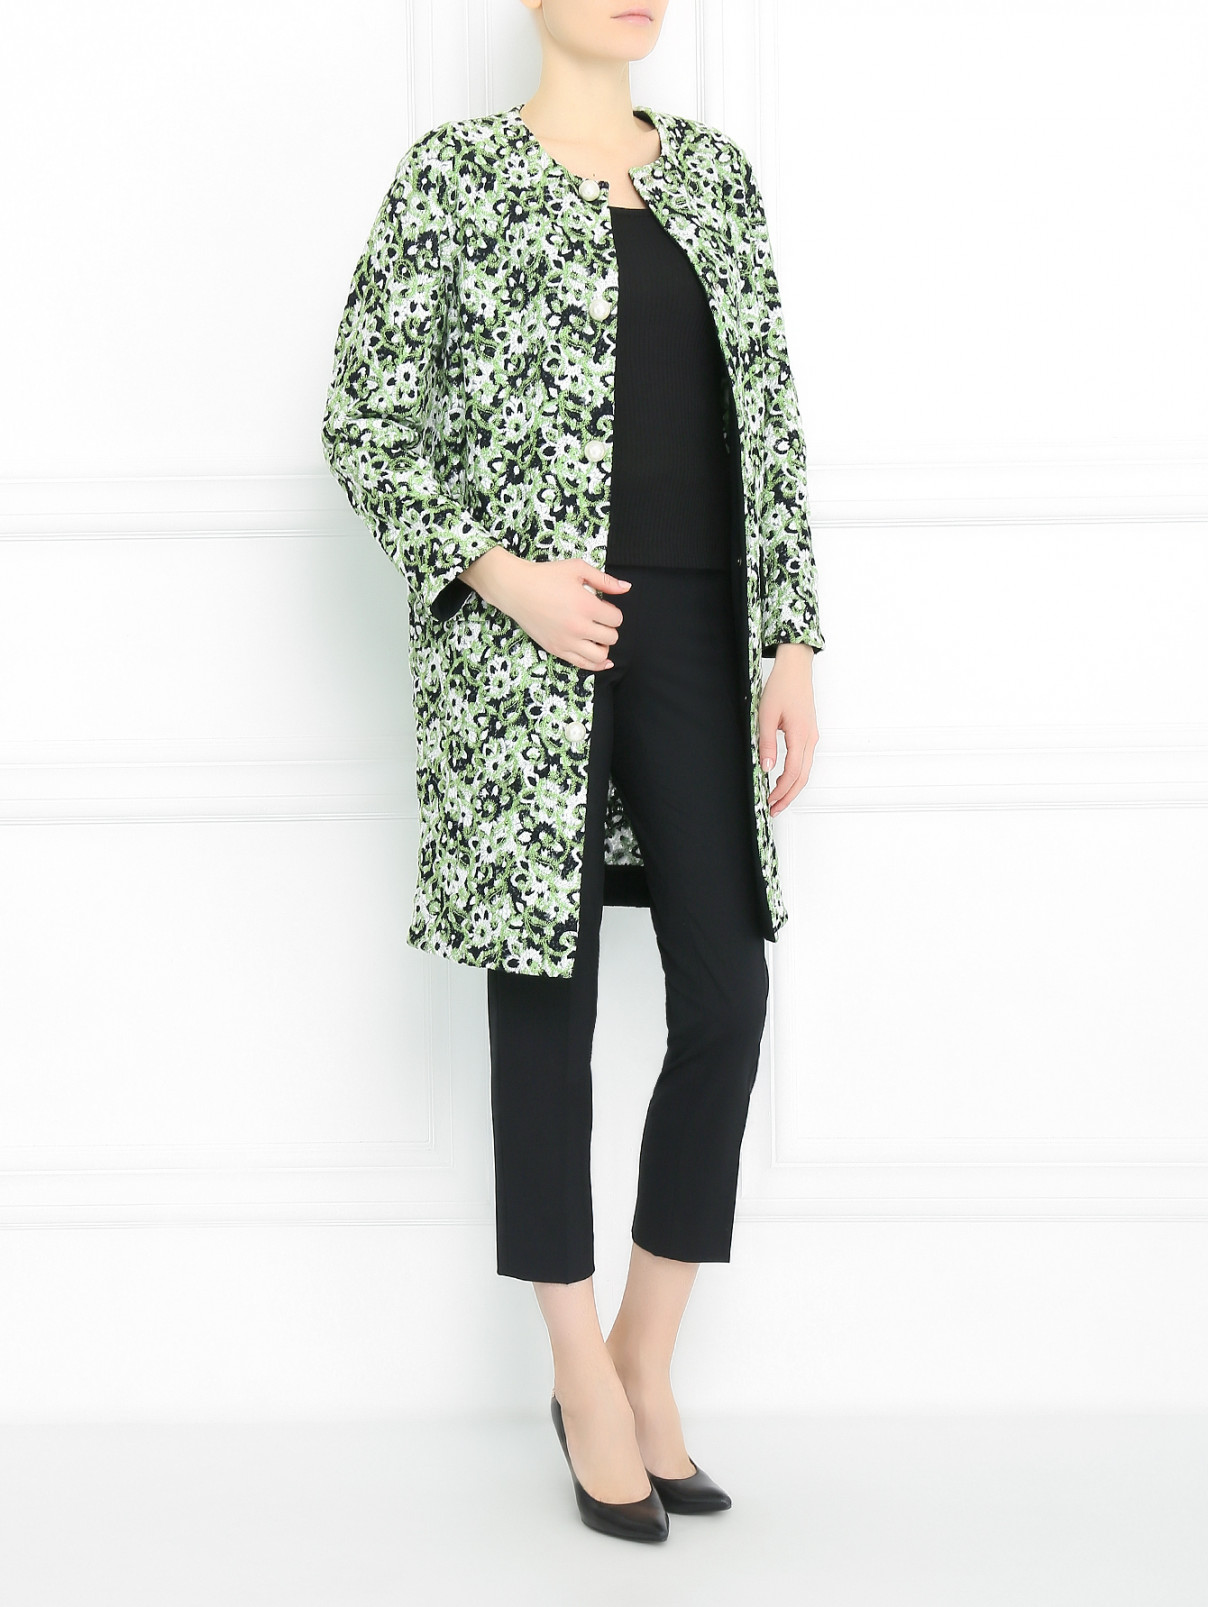 Пальто с узором и декоративными пуговицами Moschino Cheap&Chic  –  Модель Общий вид  – Цвет:  Узор